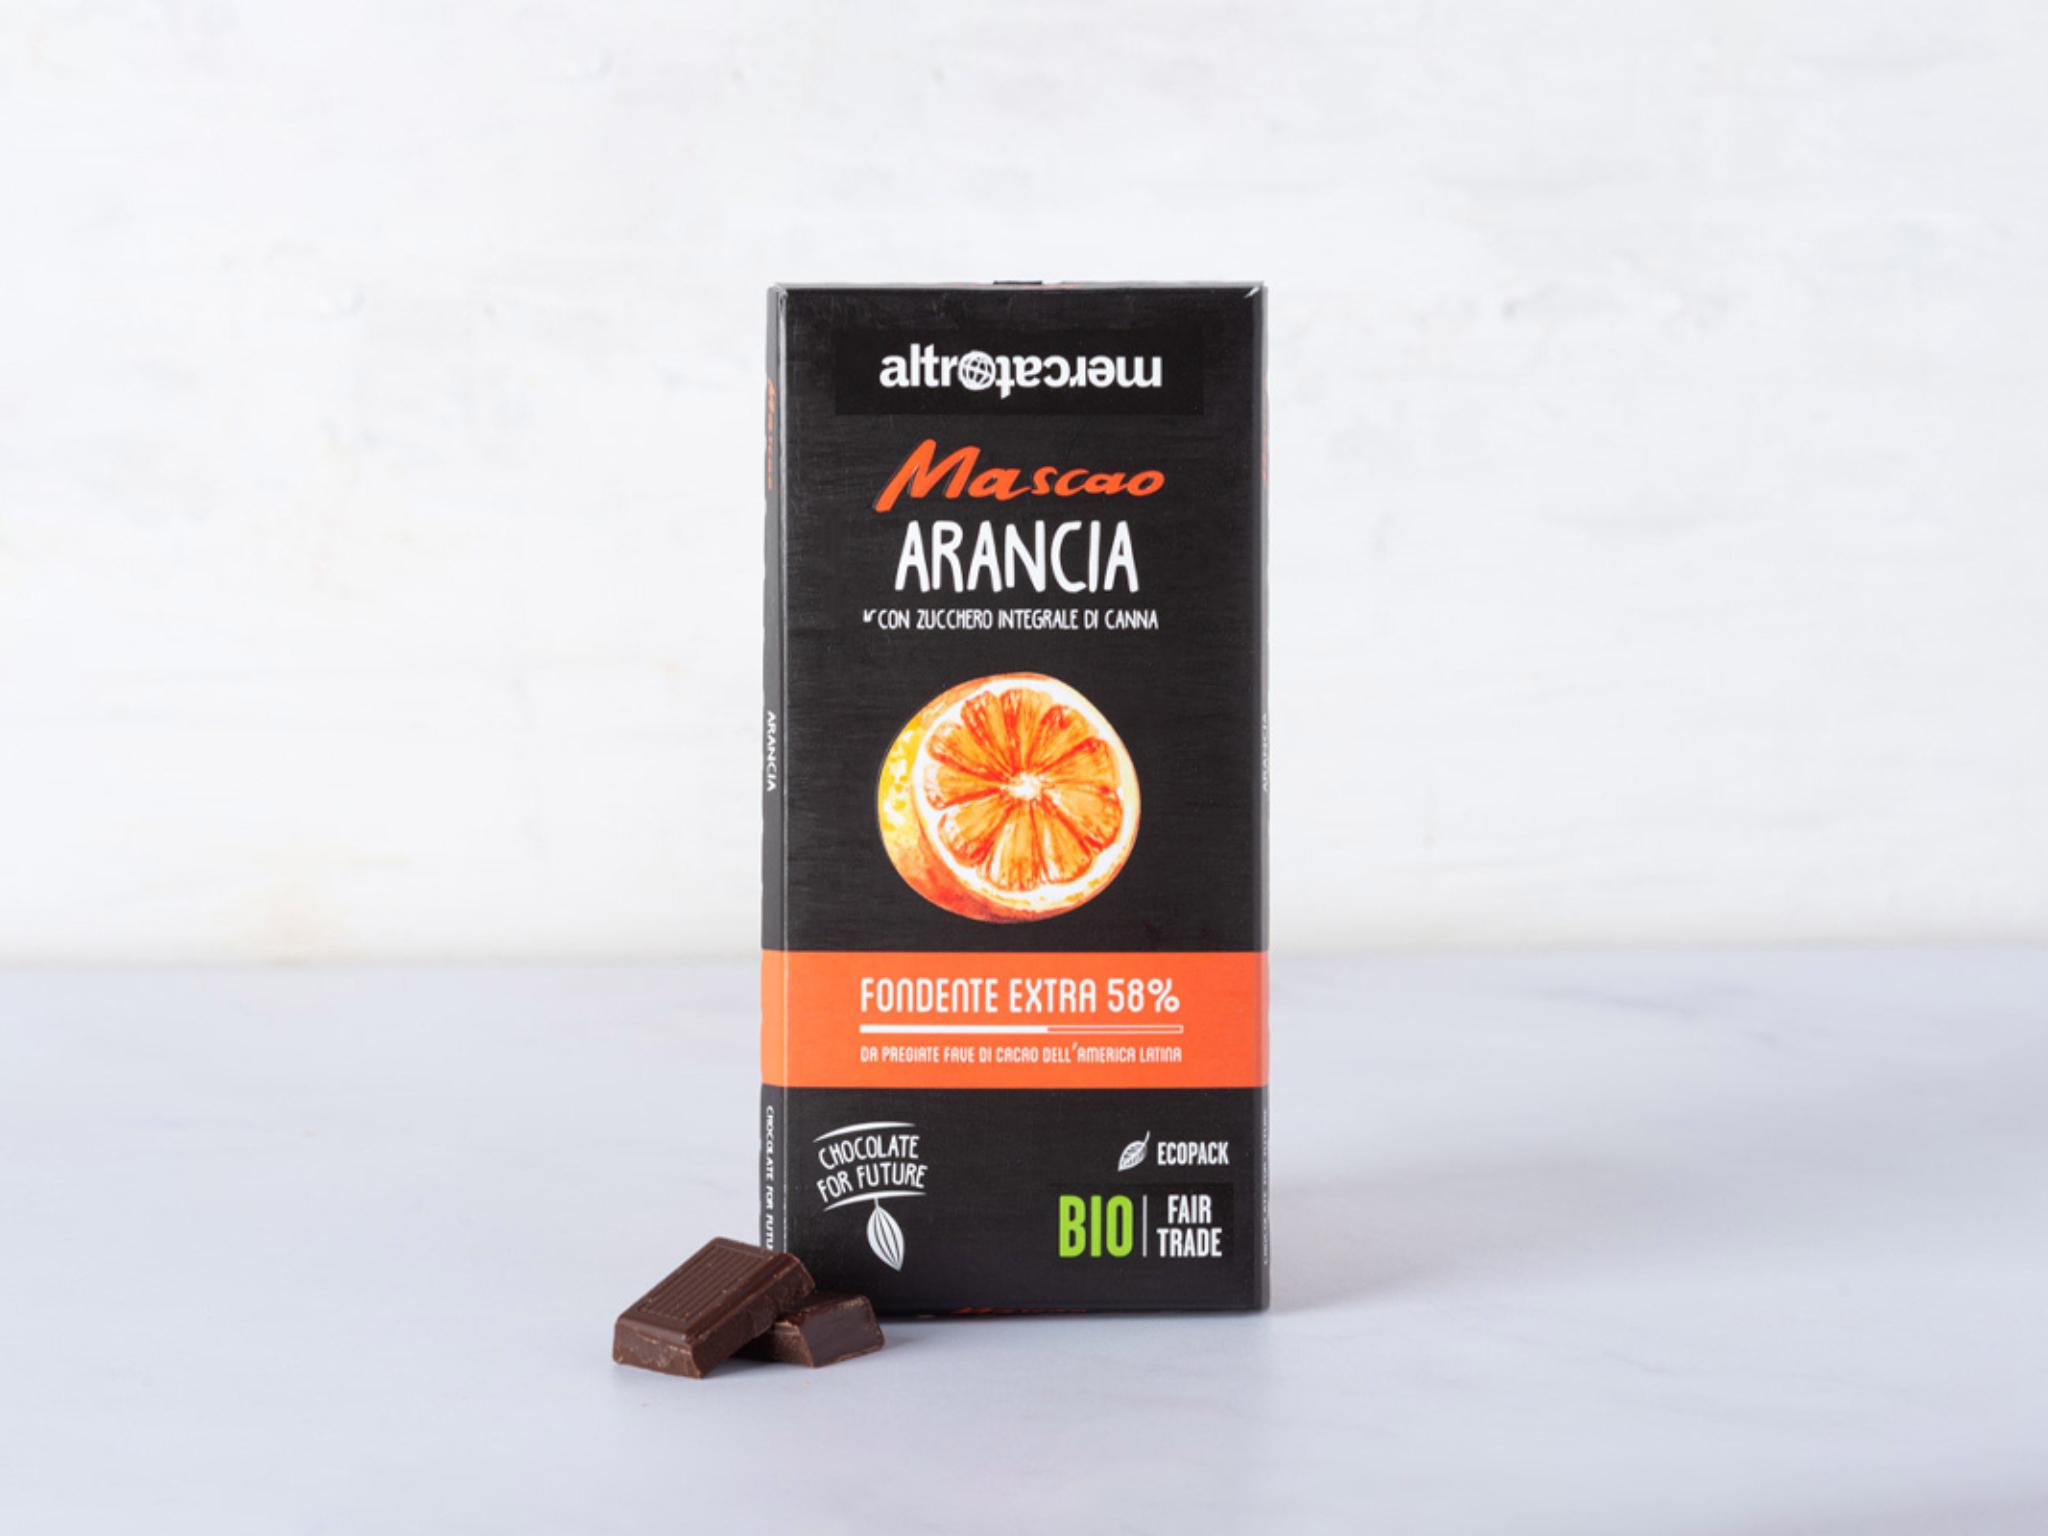 Cioccolato Mascao fondente extra con arancia BIO